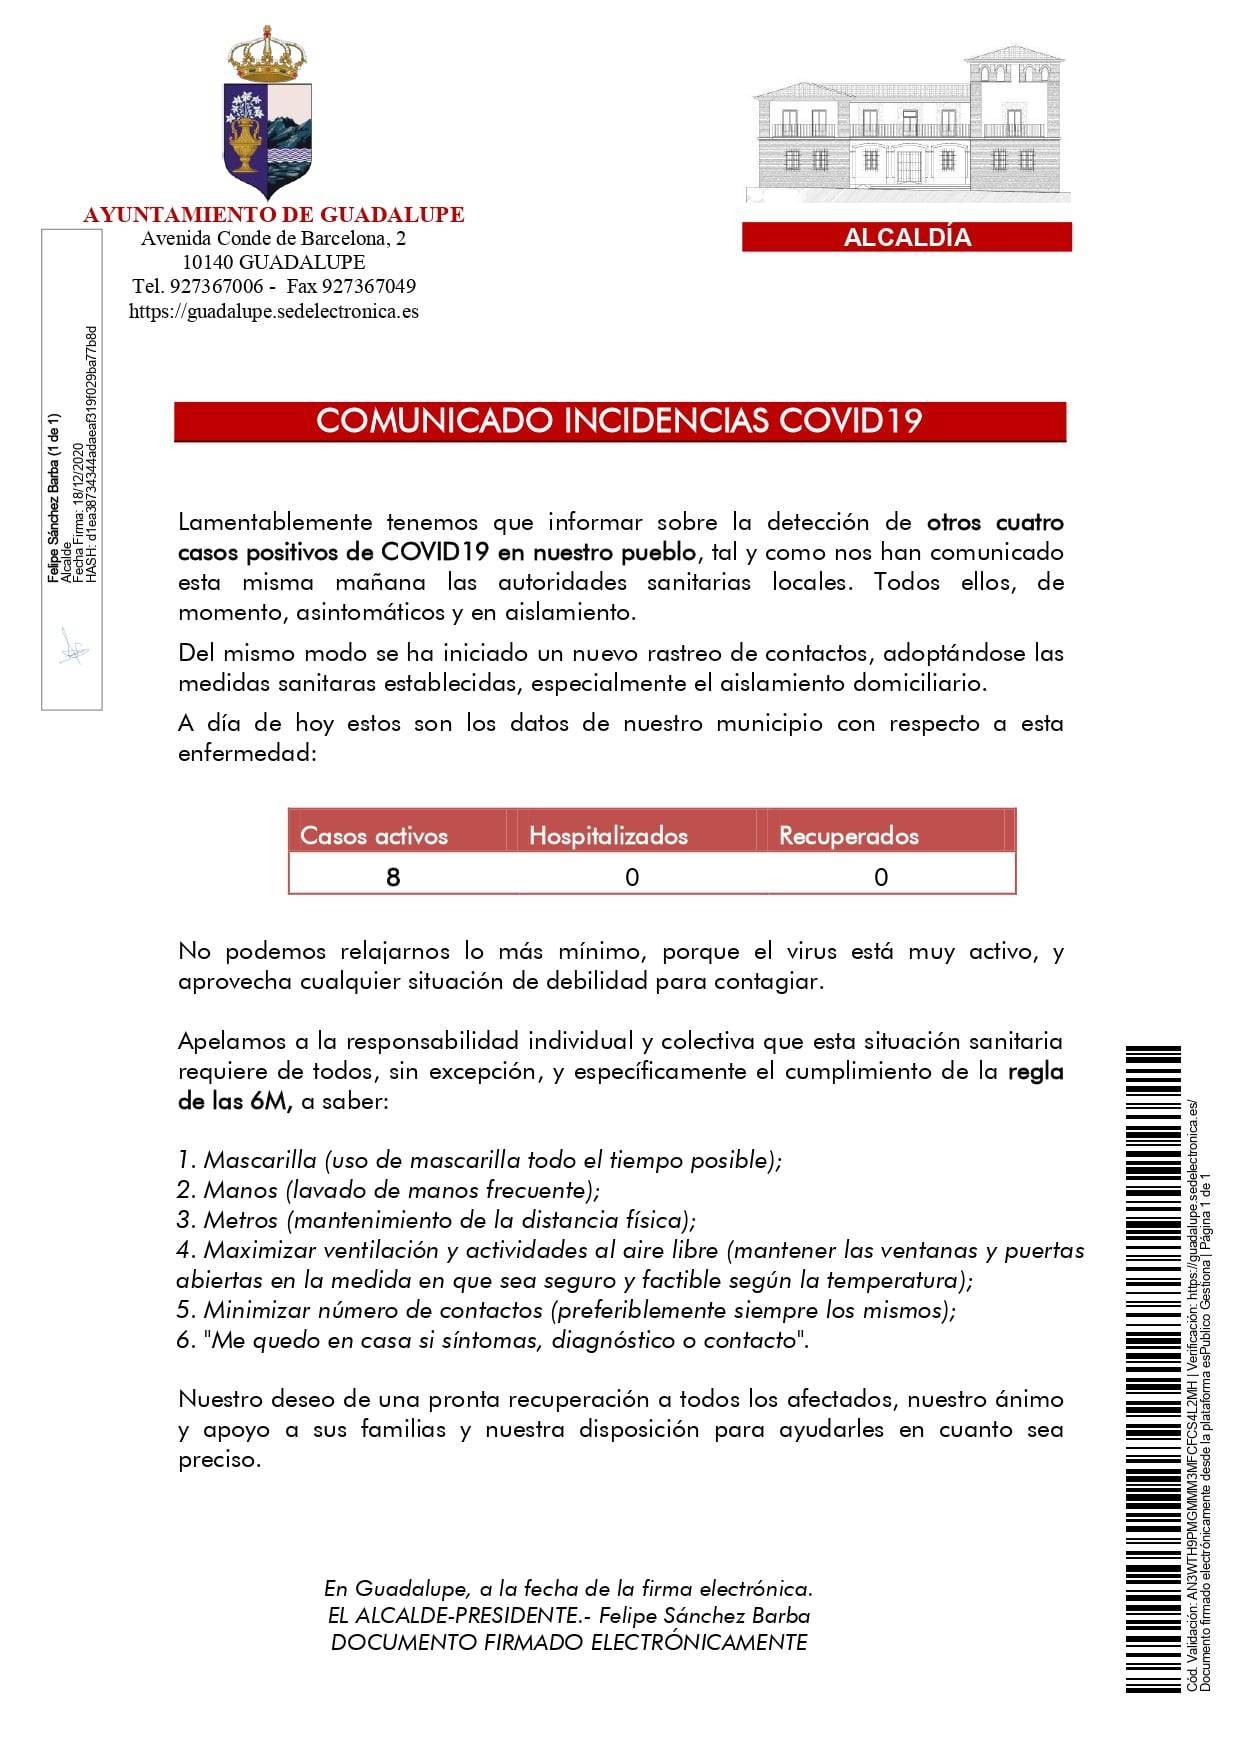 8 casos positivos activos de COVID-19 (diciembre 2020) - Guadalupe (Cáceres)